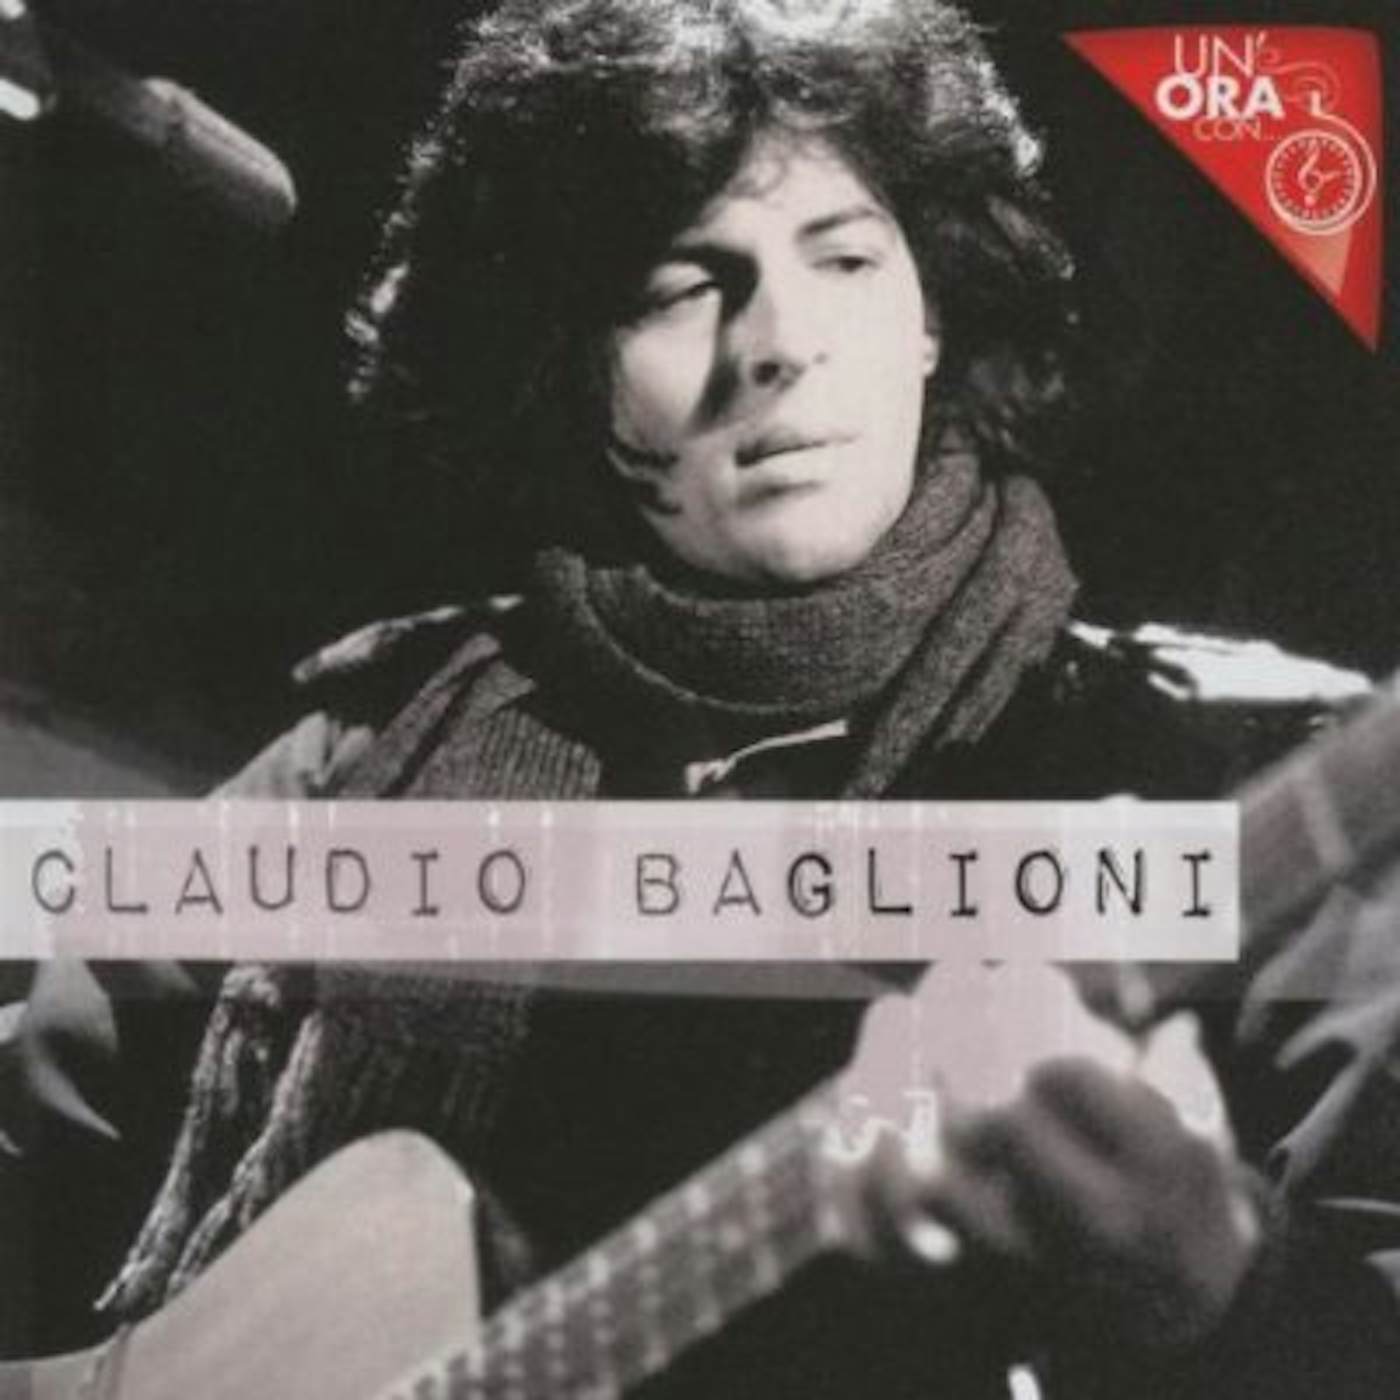 Claudio Baglioni UN ORA CON CD